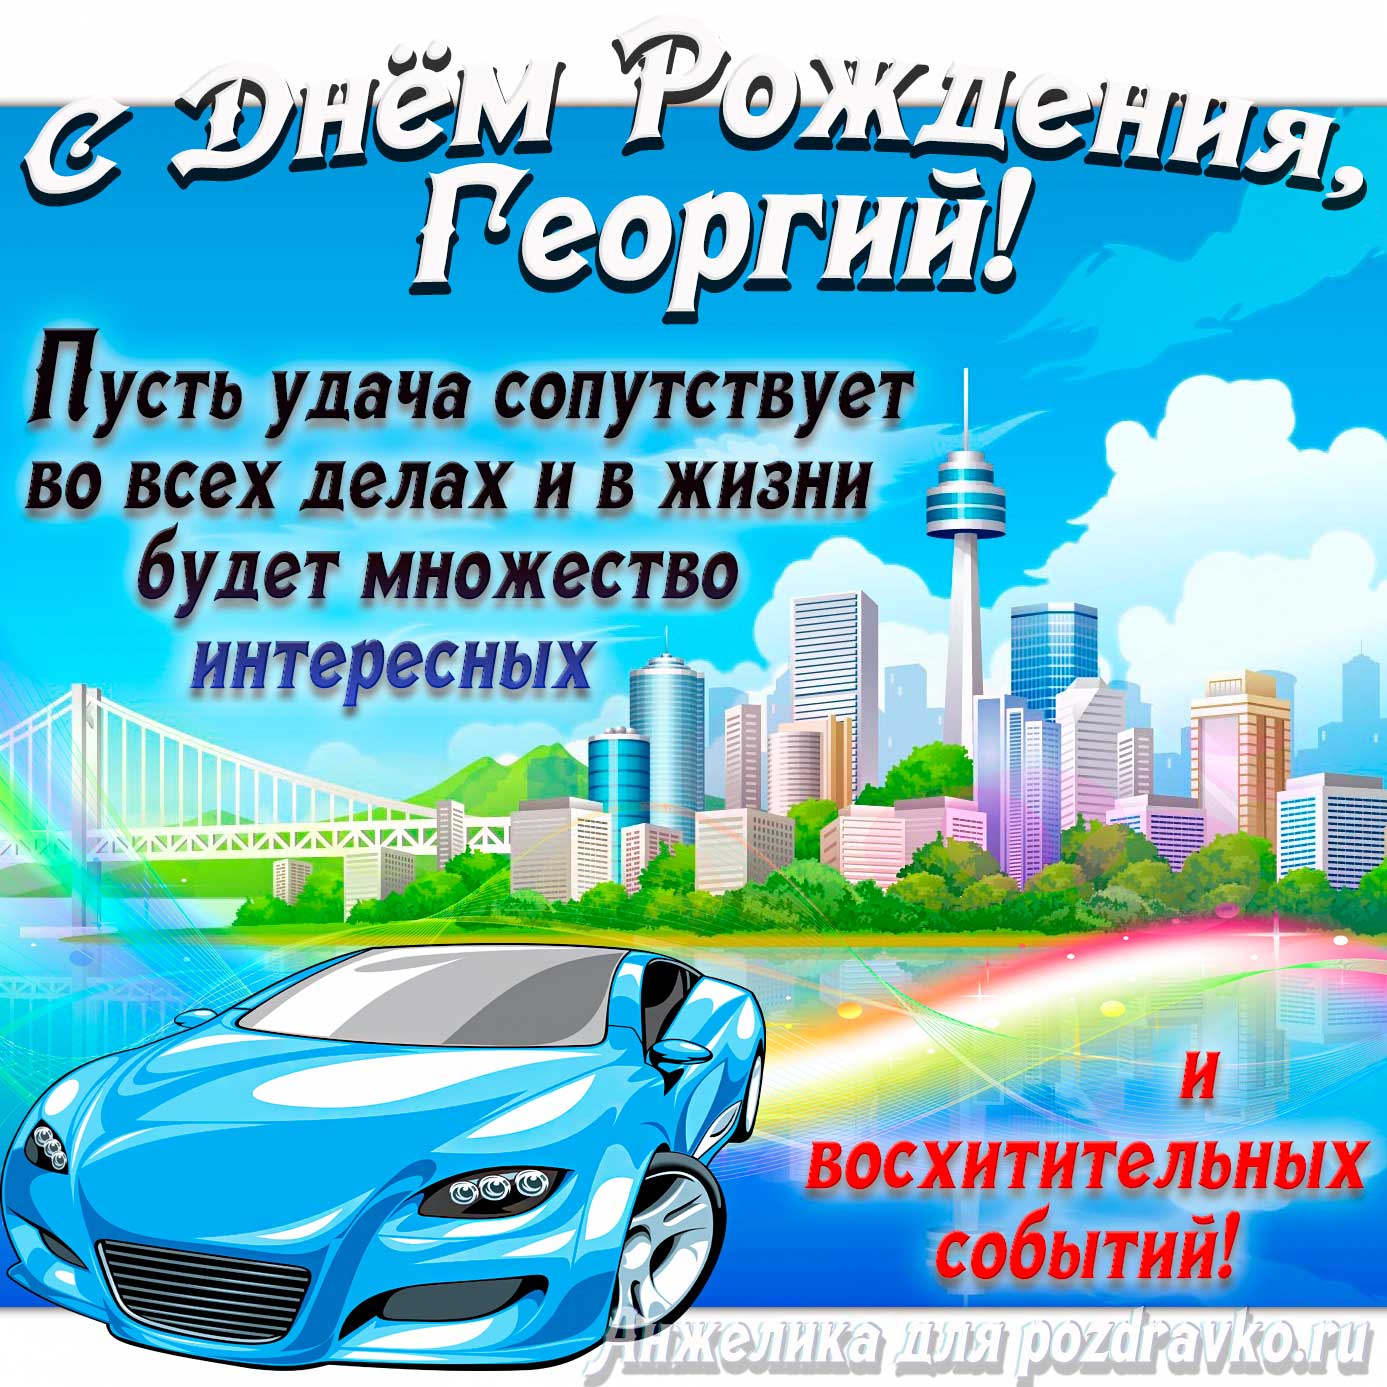 Открытка - с Днём Рождения Георгий с голубой машиной и пожеланием. Скачать бесплатно или отправить картинку.